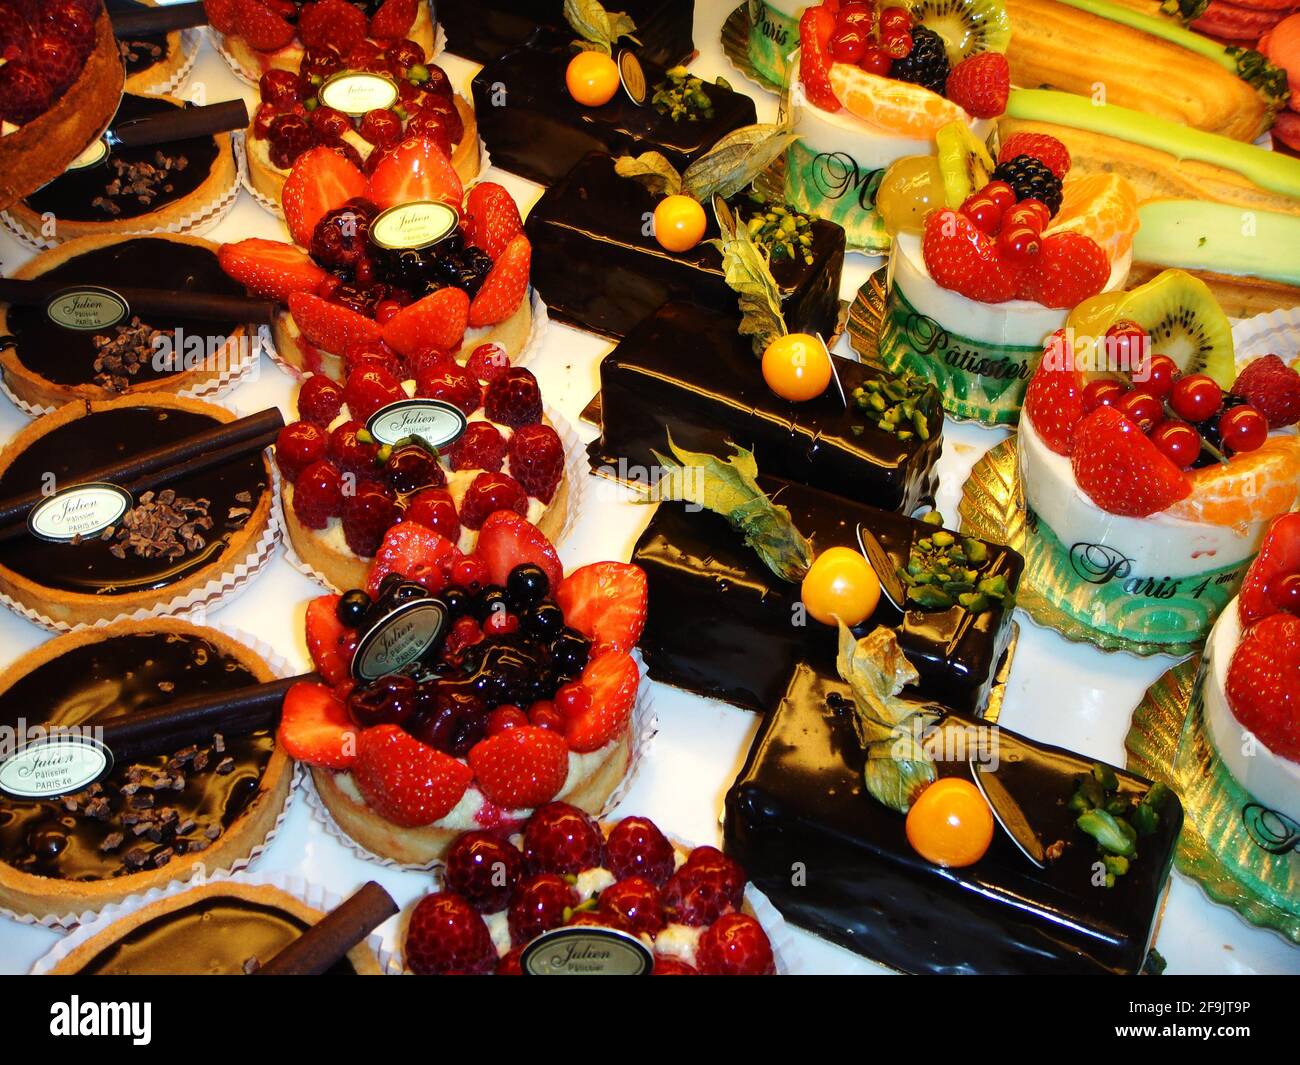 leckere Ausblicke ins Schaufenster einer pariser Patisserie, gefüllt mit köstlichen Obsttörtchen garniert mit Früchten, Schokolade und Karamell Stock Photo